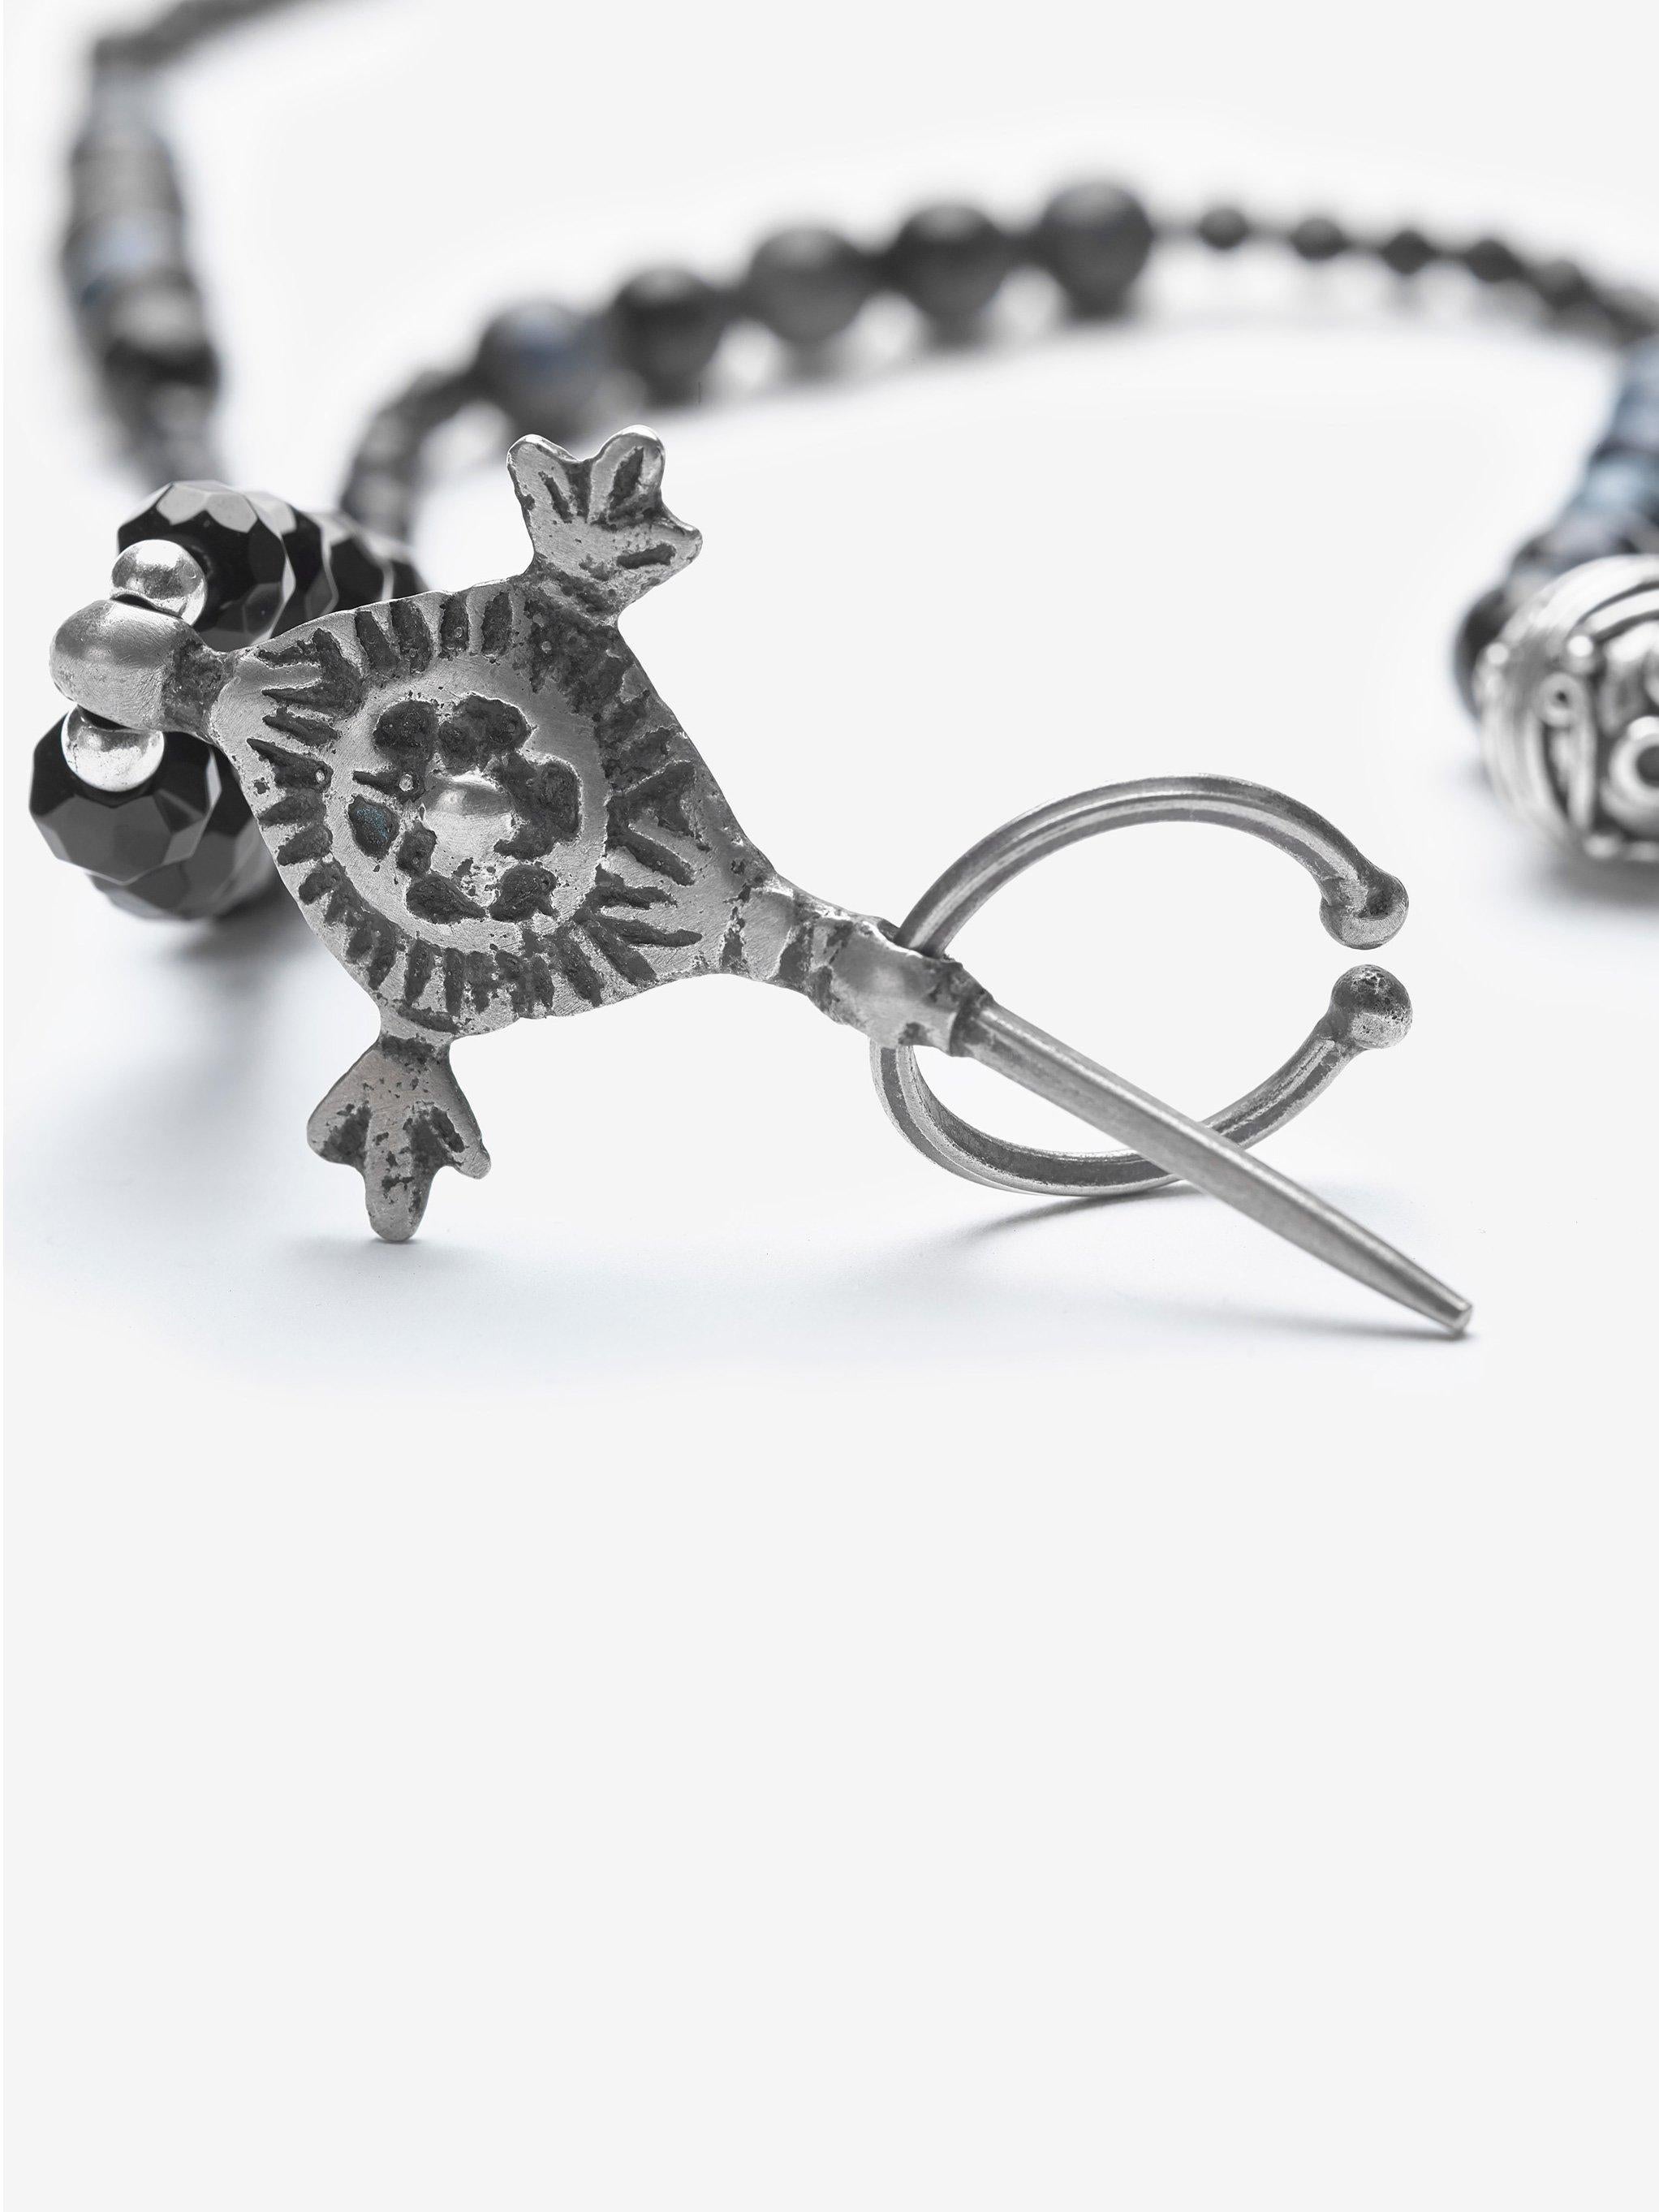 Die Geschichte des Schmucks 

Die wunderschöne Halskette ist mit Spinell und mitternachtsblauem Tigerauge geschmückt.  Der Anhänger wurde in den Souks von Fez, Marokko, gekauft. Das Symbol ist ein Kompass, ein wichtiges Symbol in der Berberkultur,